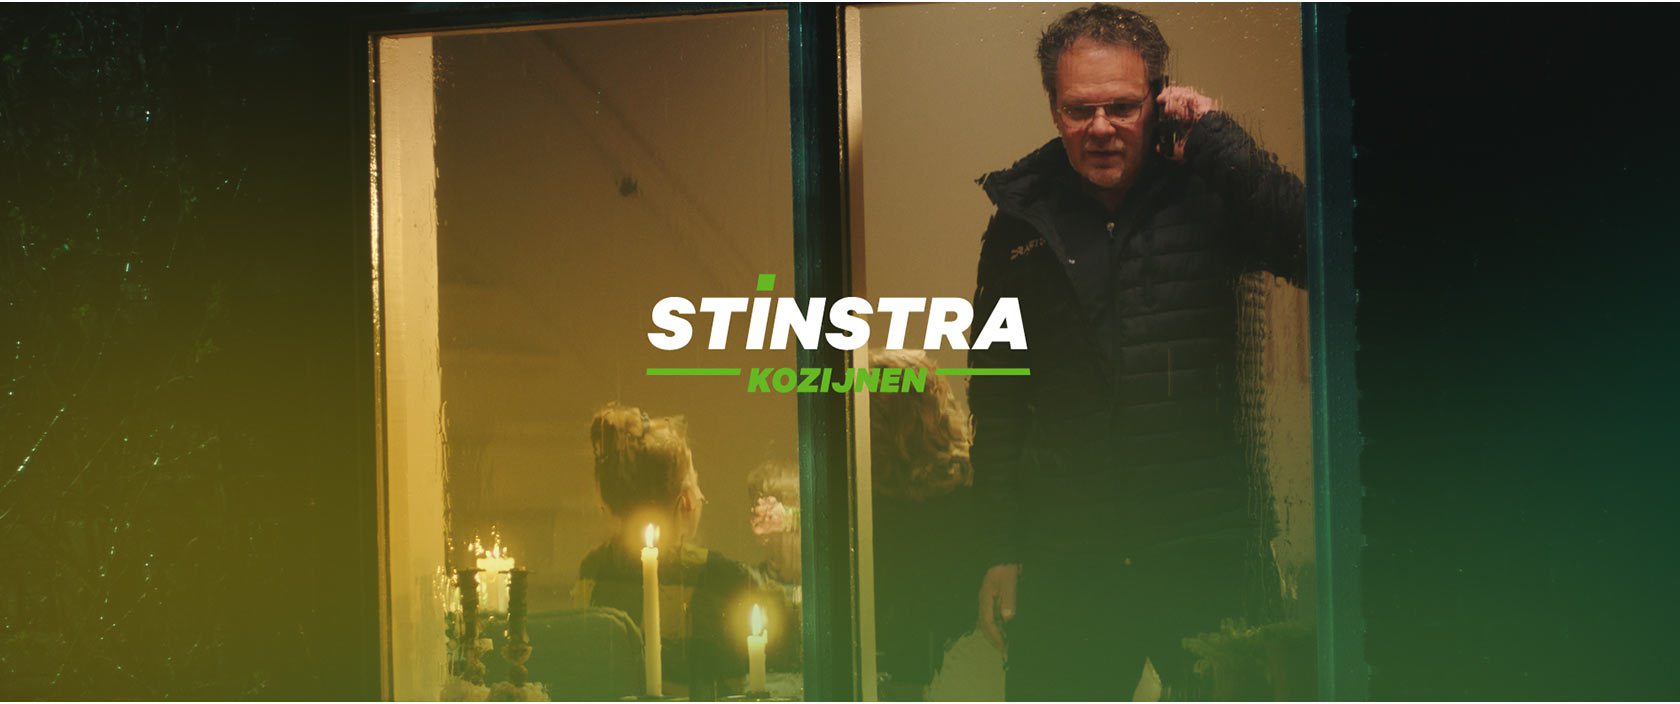 stinstra_still015